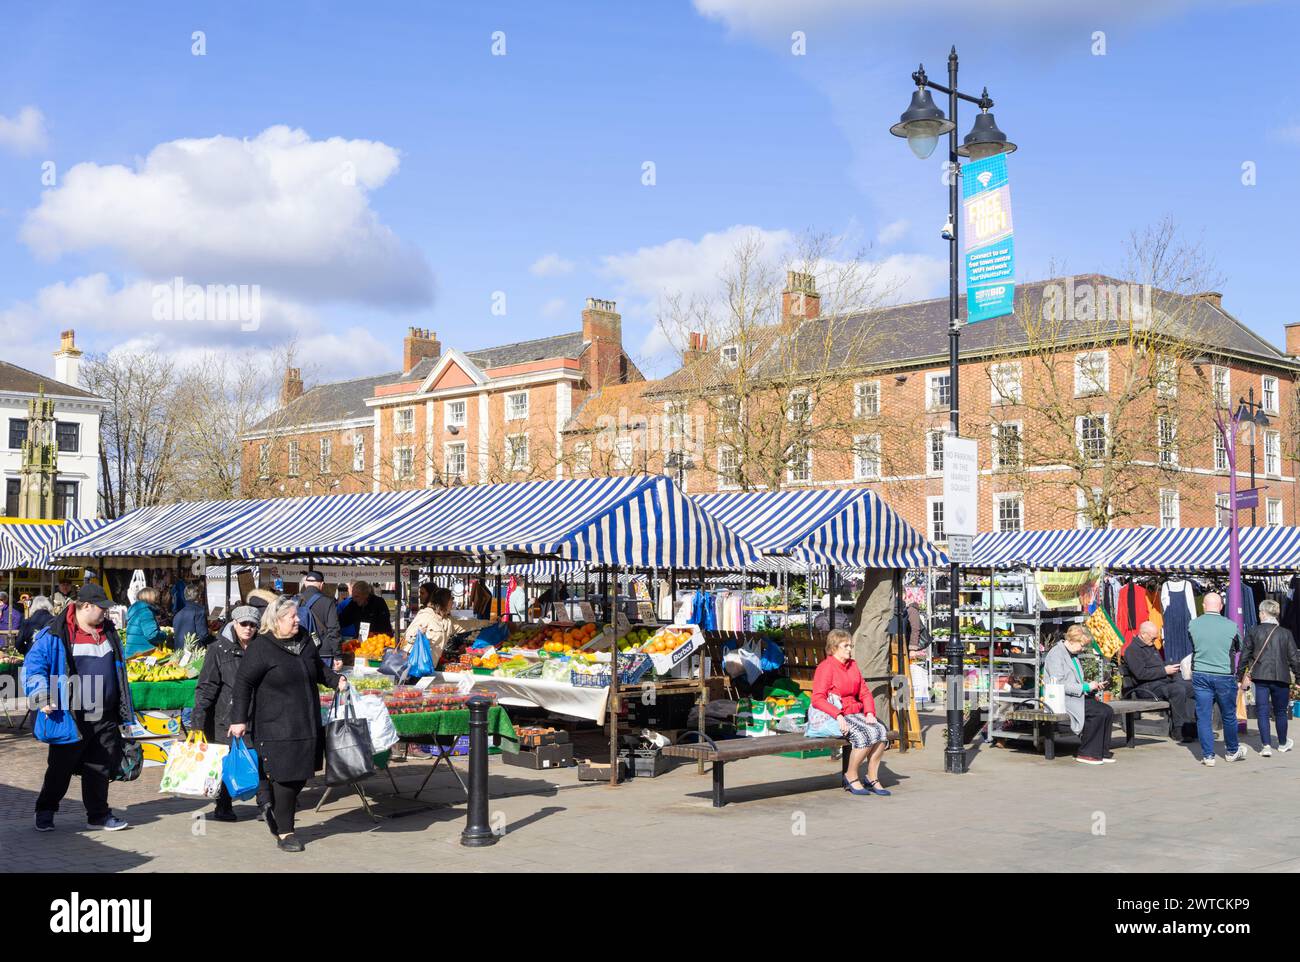 Retford Market Square mit Einkaufsmöglichkeiten an den belebten Marktständen in Retford Nottinghamshire England Großbritannien GB Europa Stockfoto